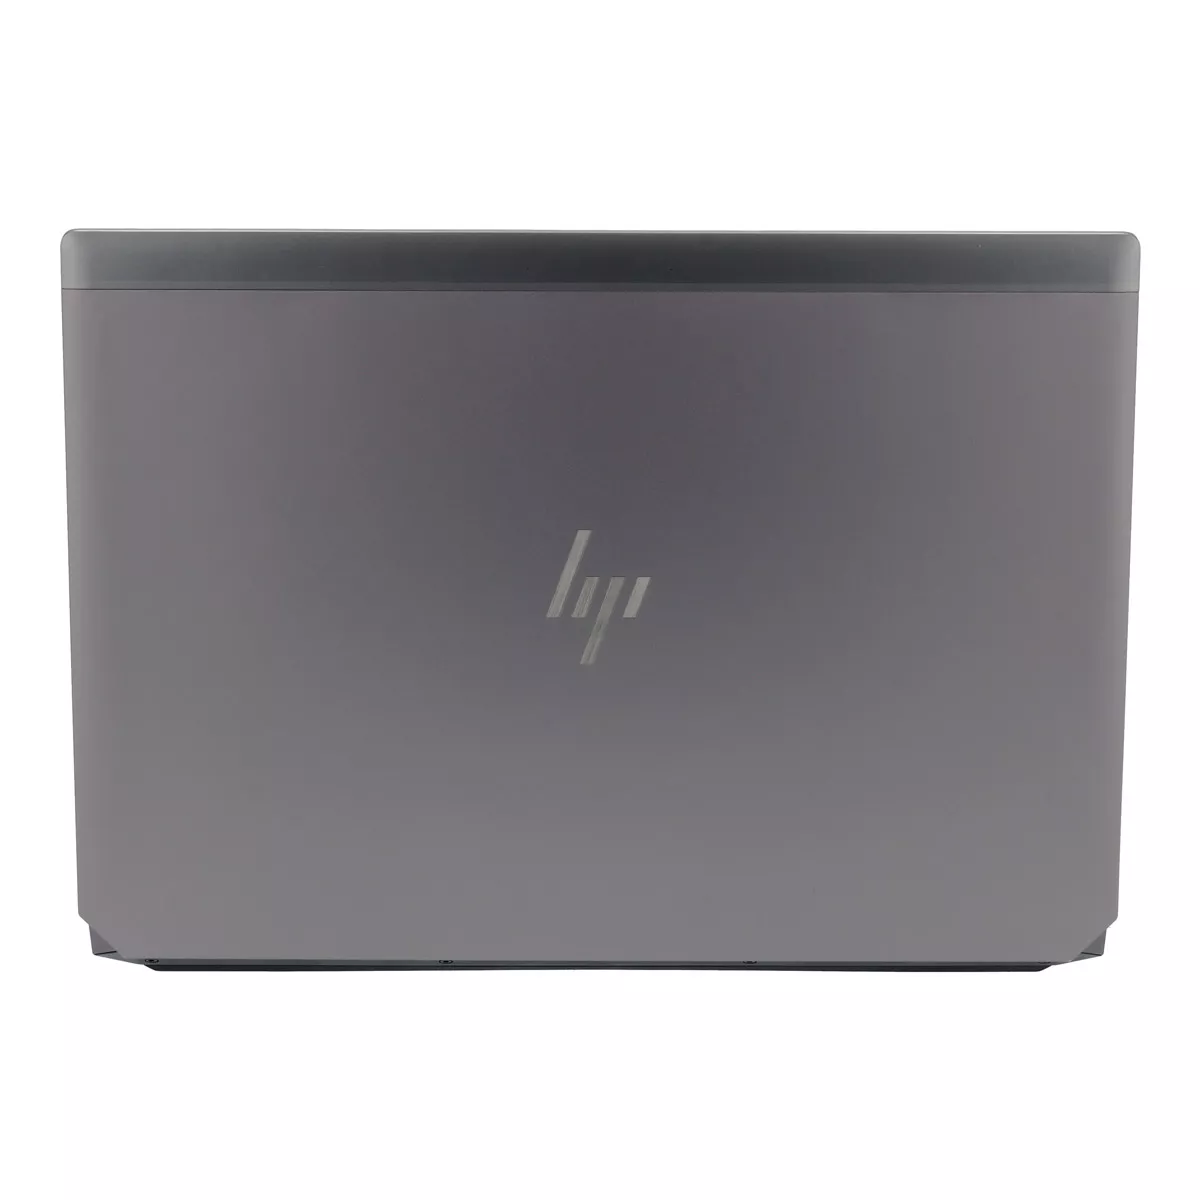 HP ZBook 15 G5 Core i7 8750H nVidia Quadro P1000M 512 GB M.2 nVME SSD Webcam B